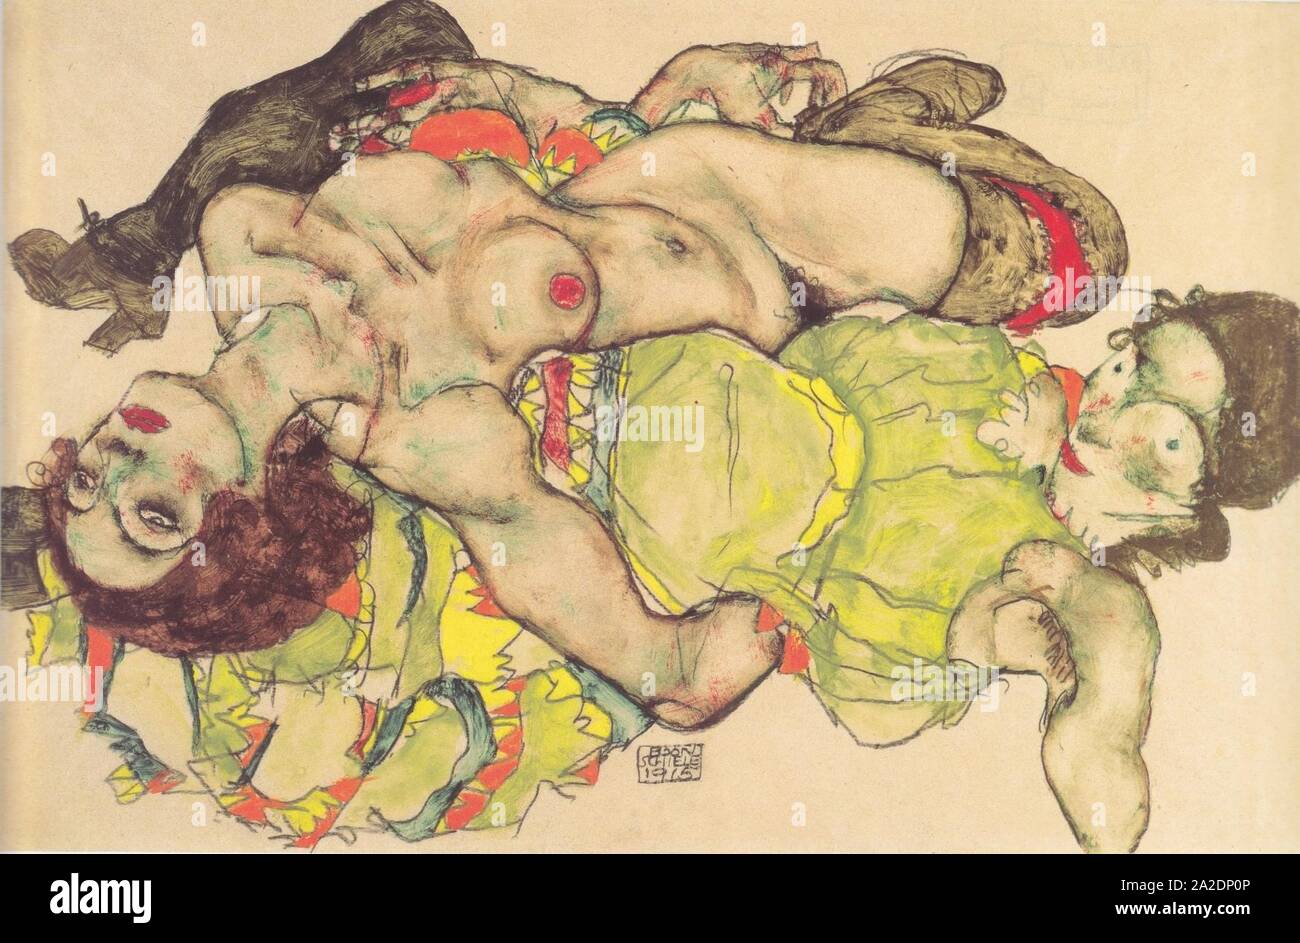 Egon Schiele - Weibliches Liebespaar - 1915. Stock Photo